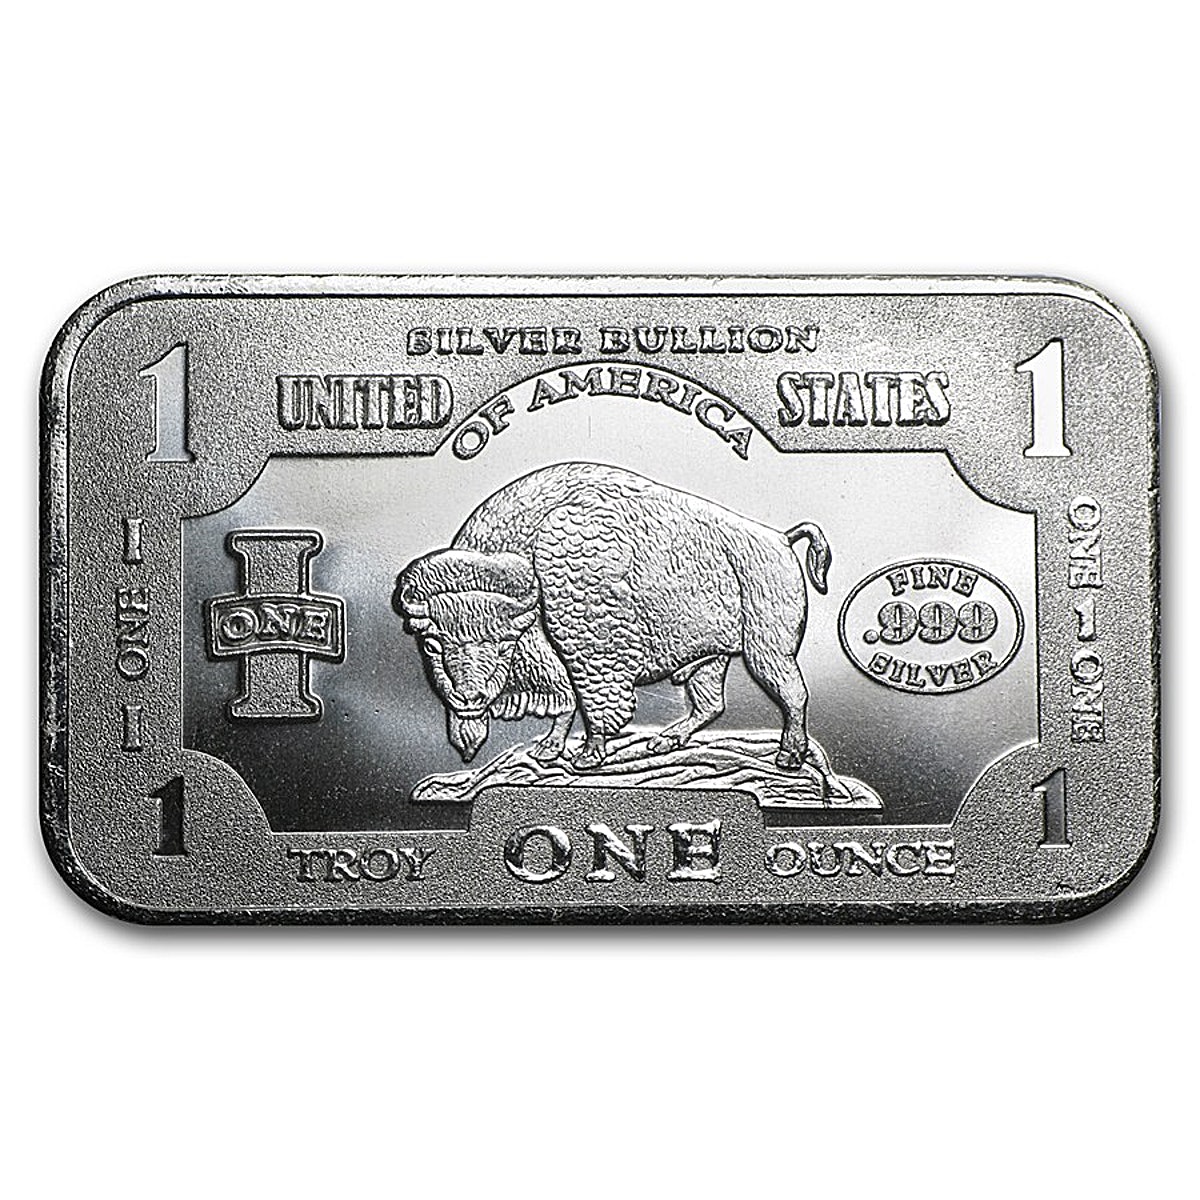 Buffalo Silver Bar - Circulated in Good Condition - 1 oz